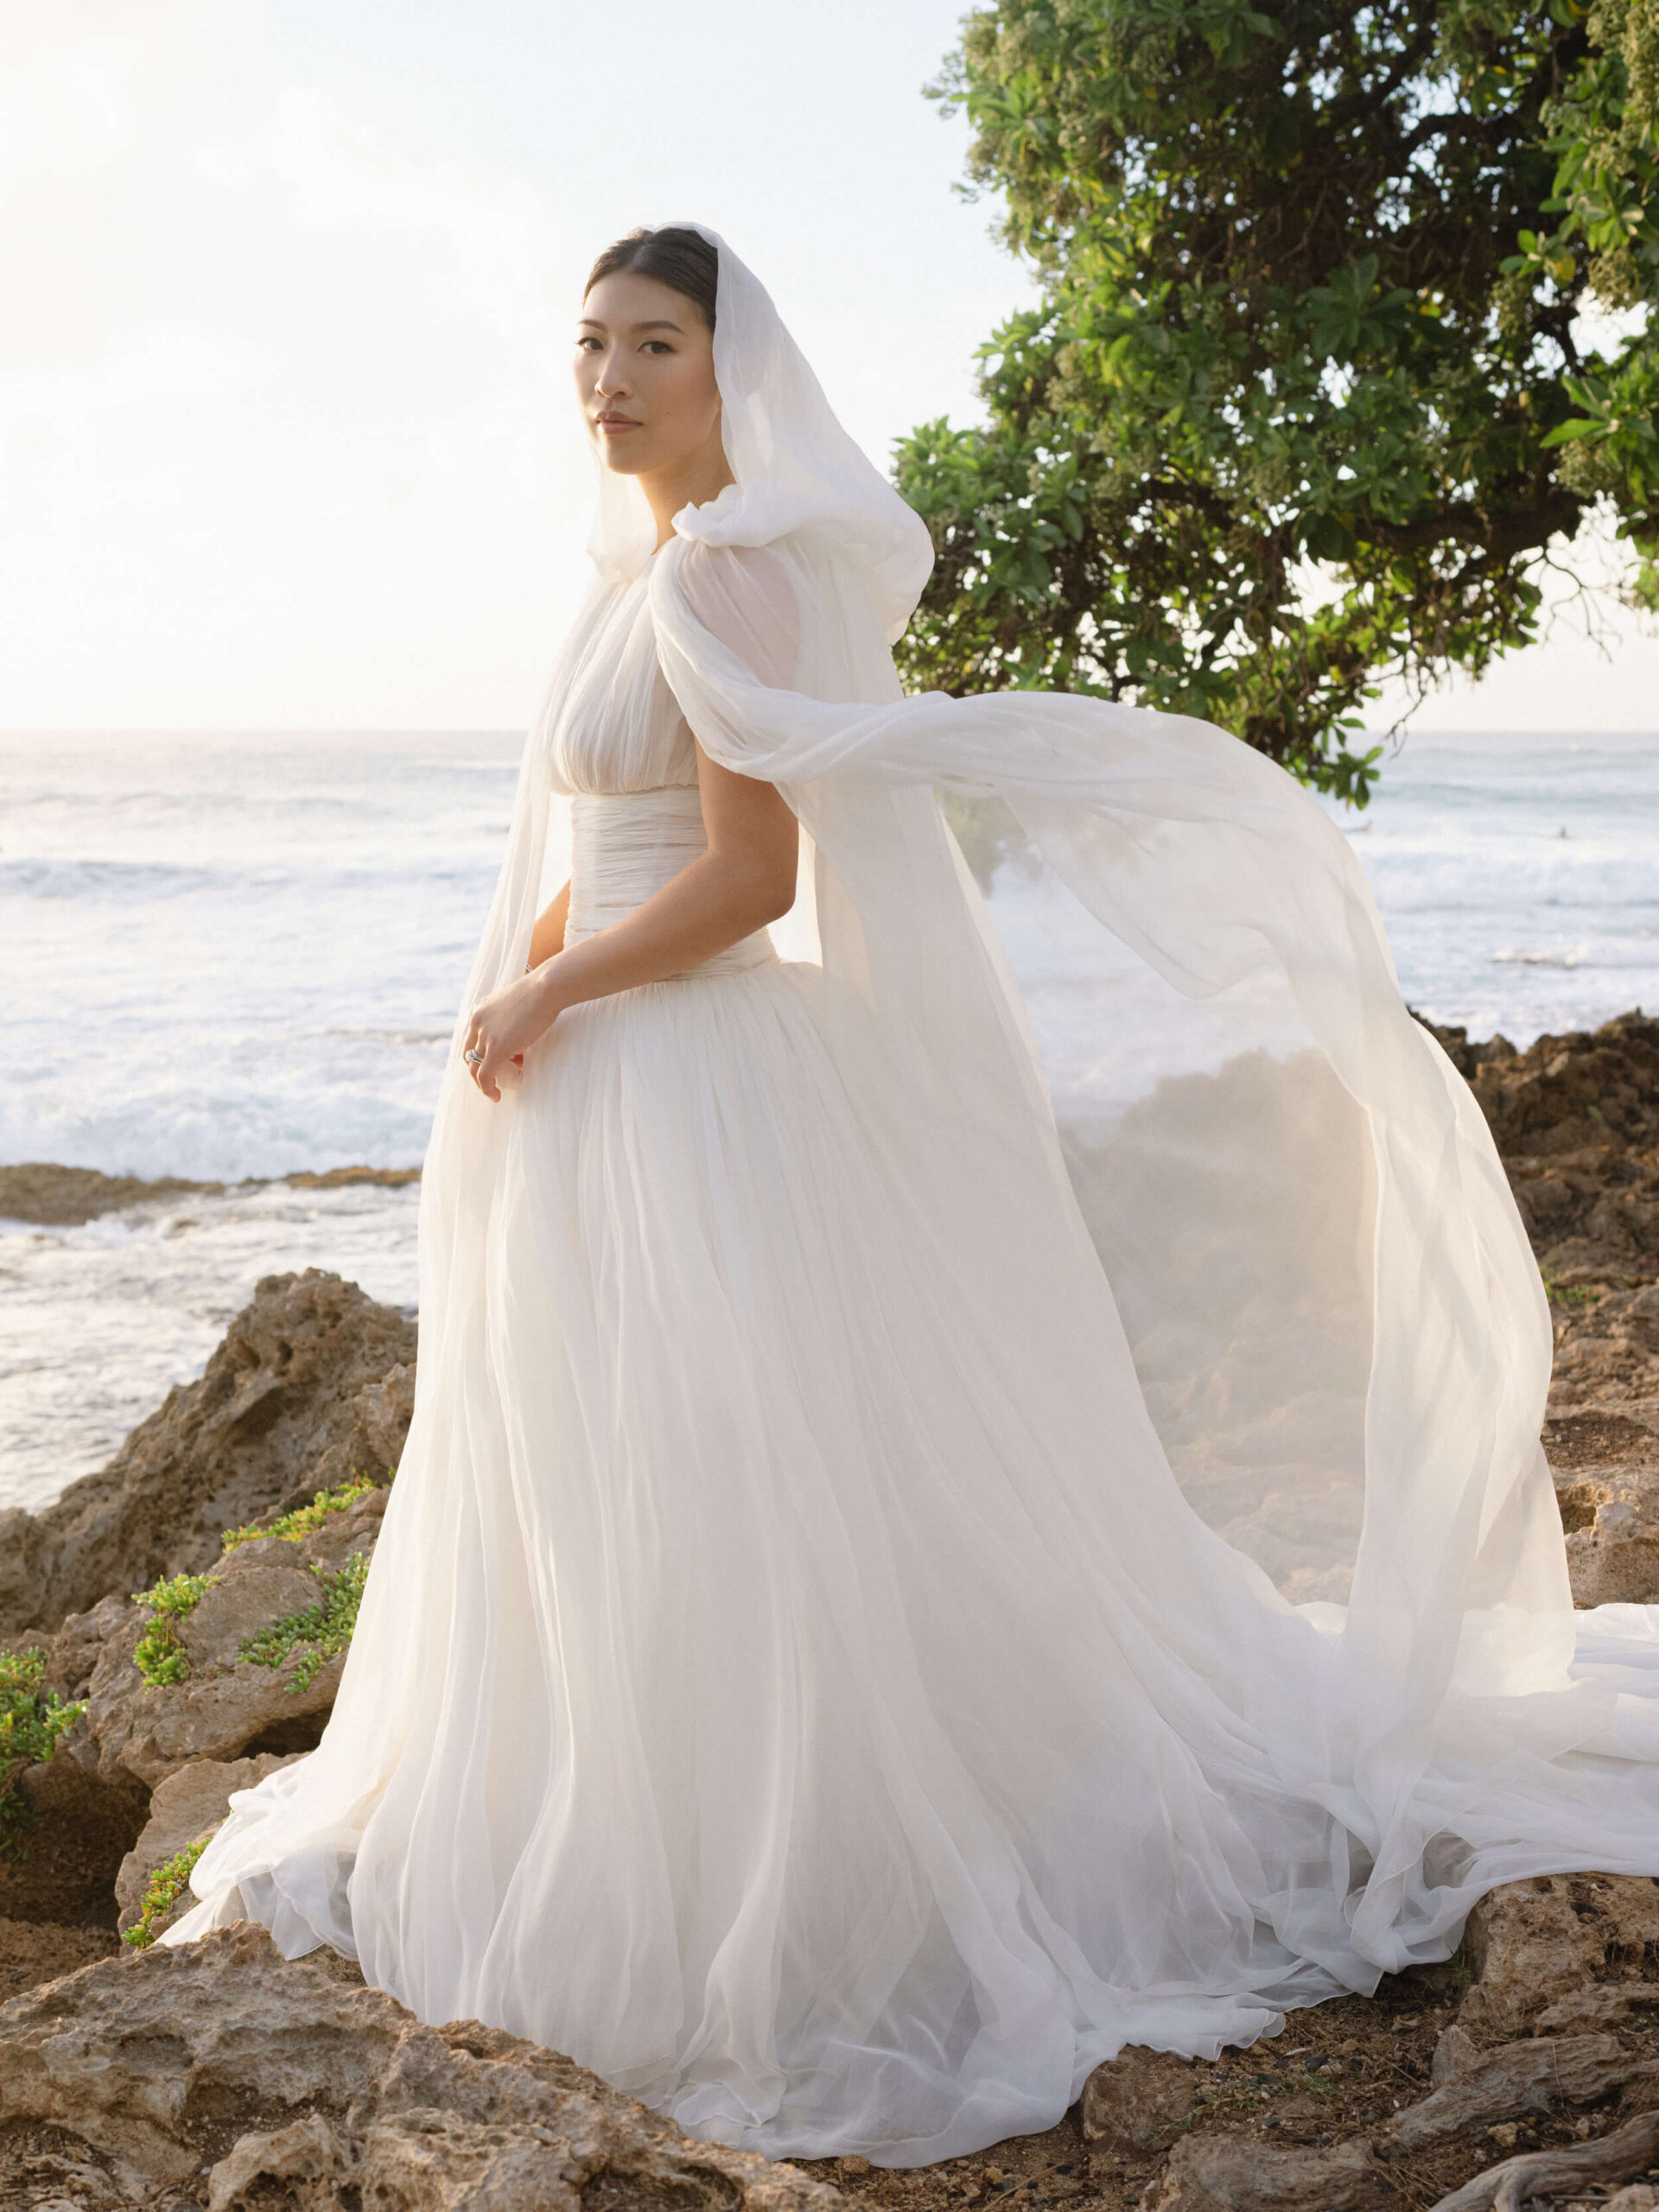 Cookie wearing her Giambattista Valli spring wedding gown in Hawaii